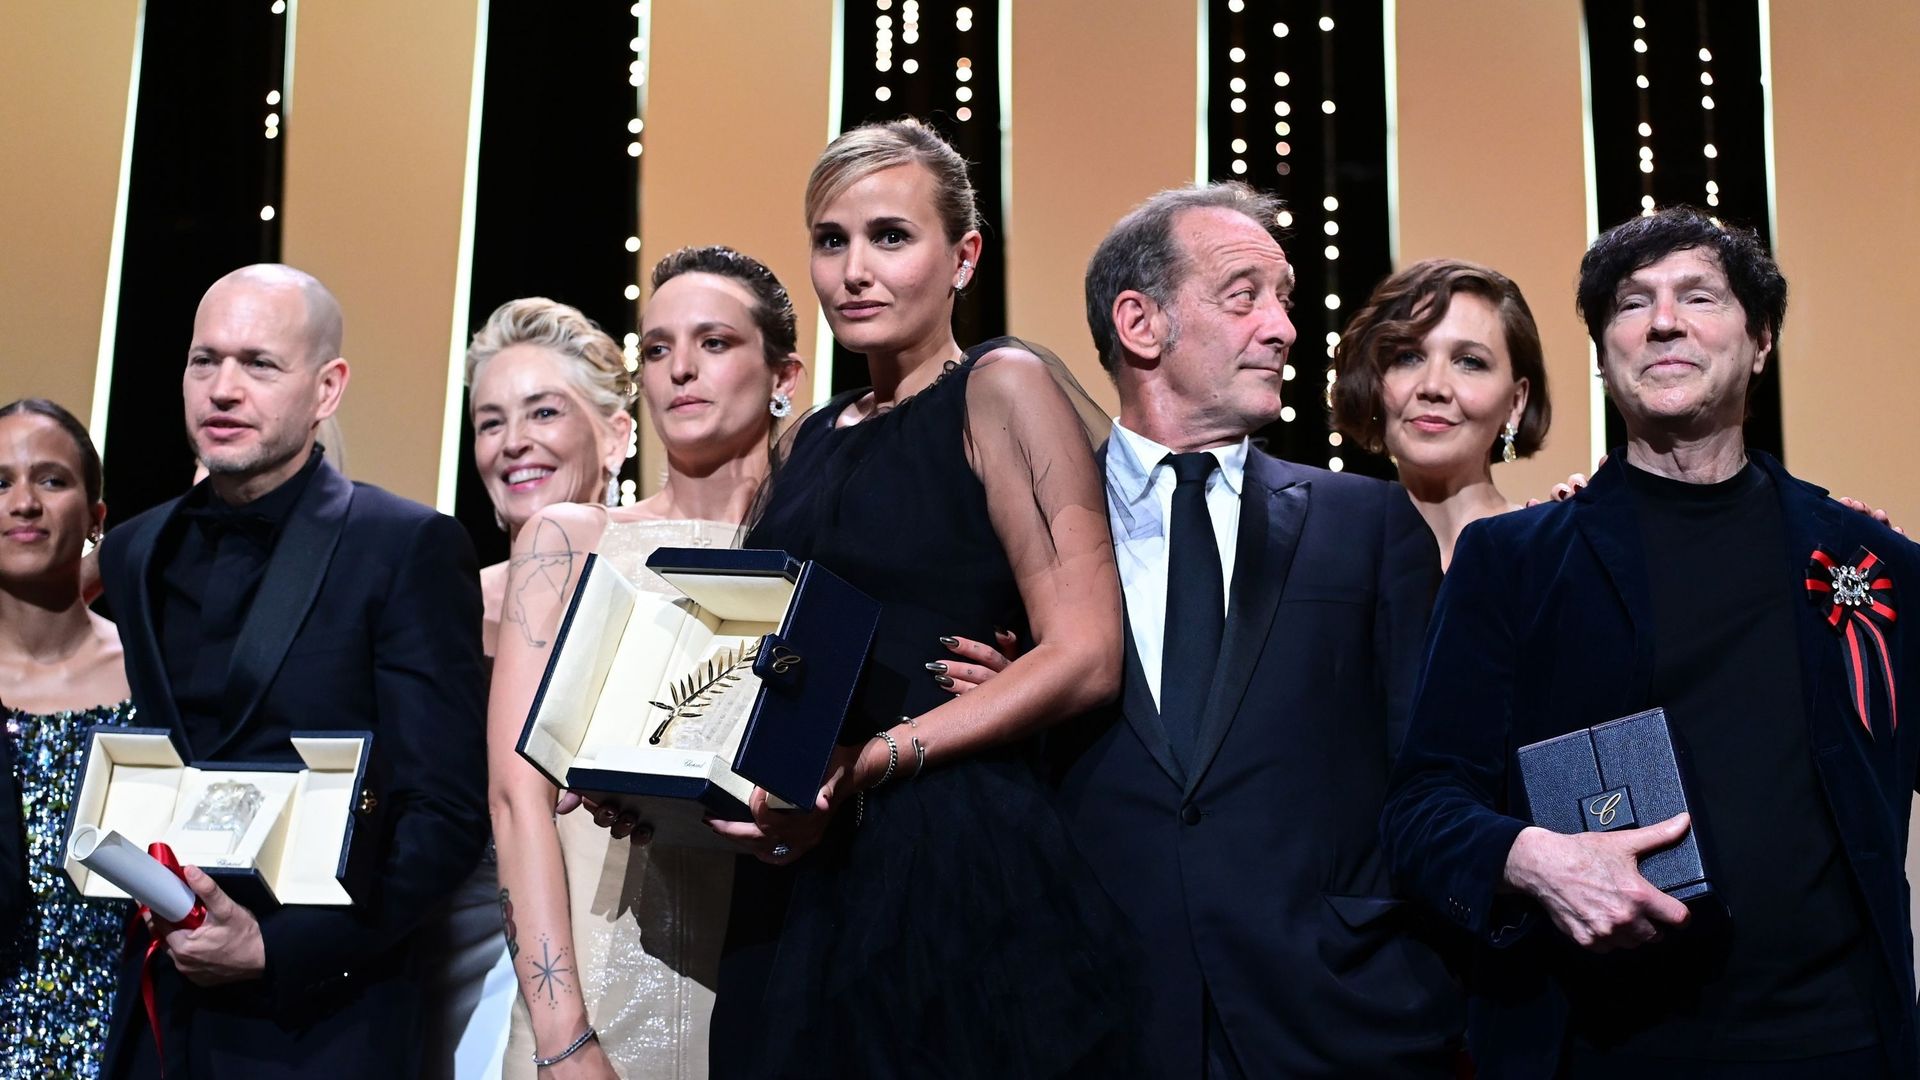 Agathe Rousselle, Julia Ducournau et Vincent Lindon posent avec la Palme d’or du meilleur film pour "Titane" lors de la cérémonie de clôture du 74e Festival de Cannes, le 17 juillet 2021 à Cannes, France.